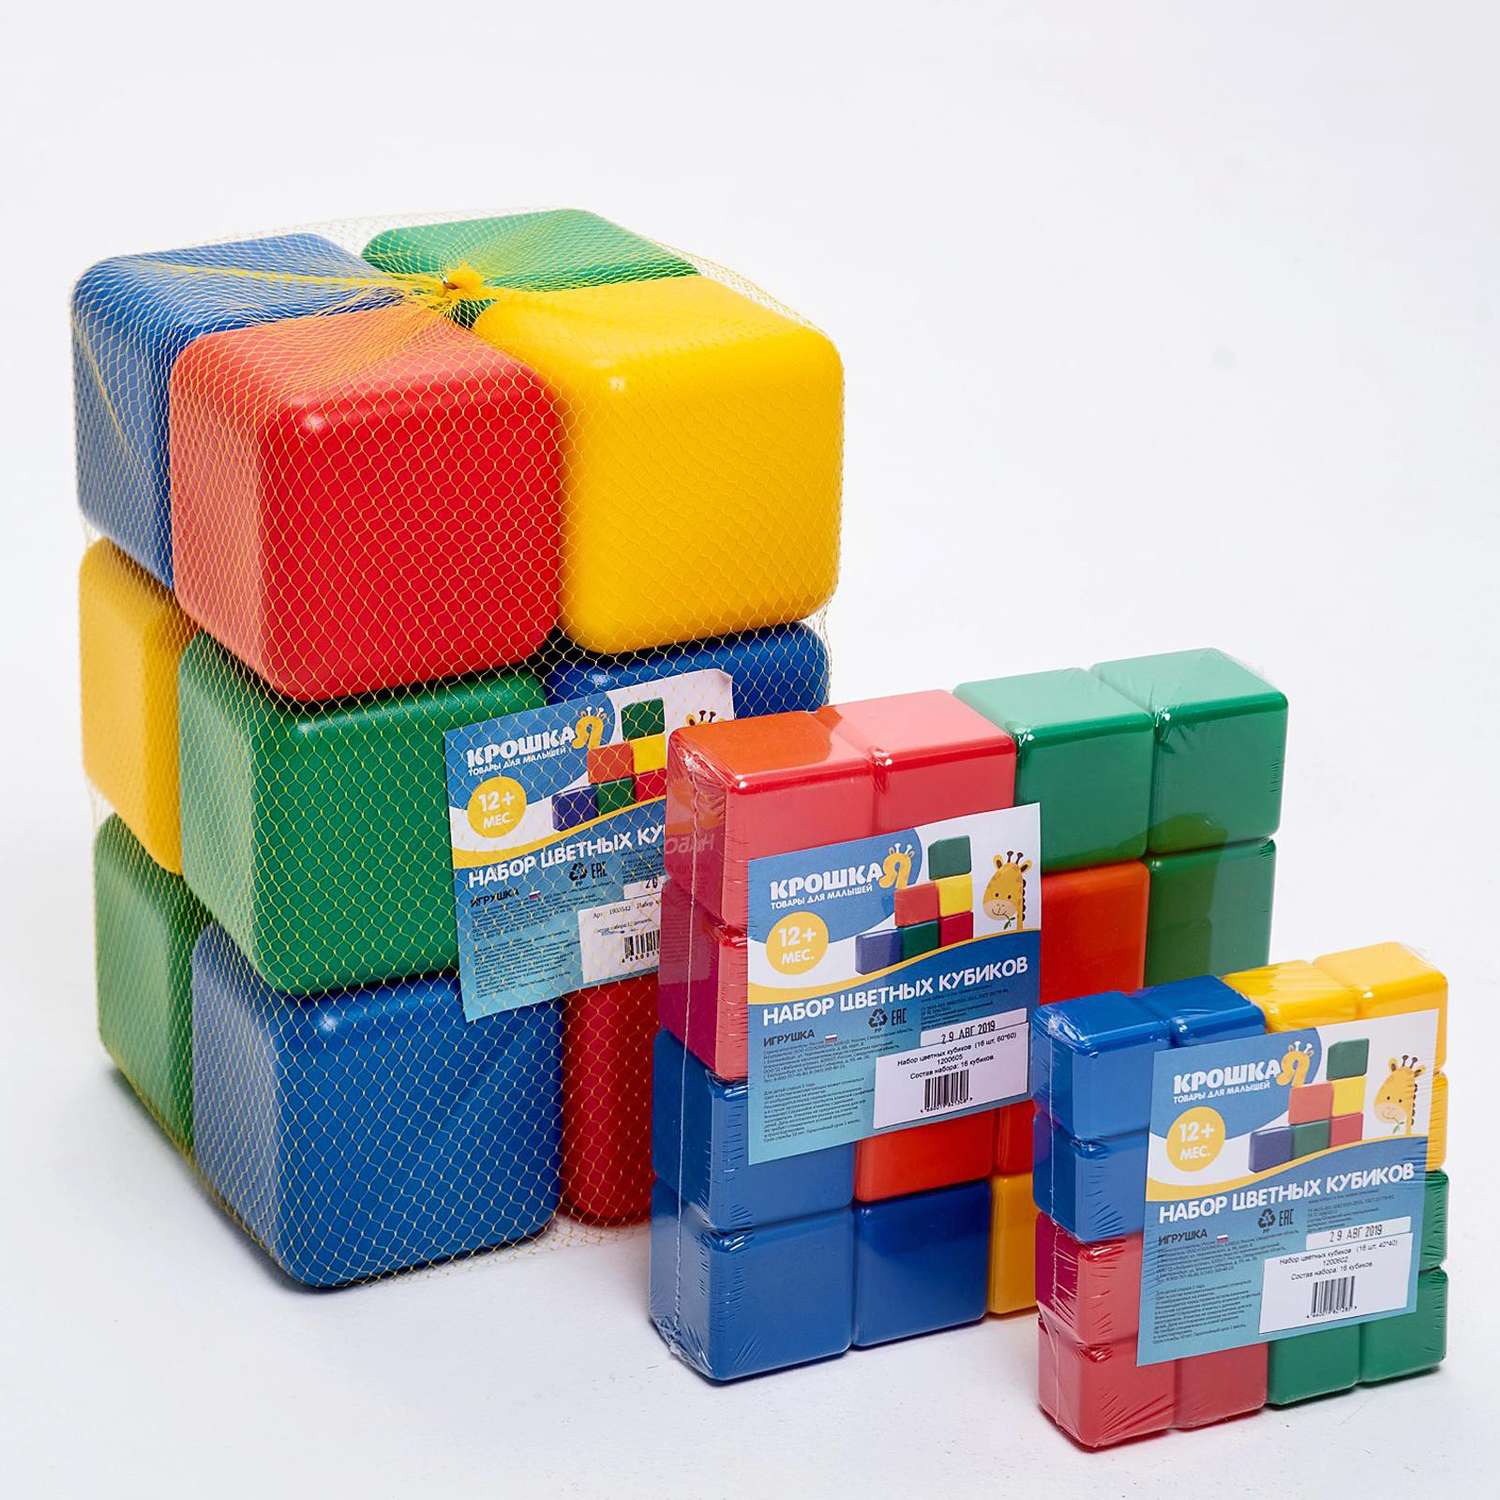 Набор Соломон цветных кубиков.16 штук 6 × 6 см - фото 7